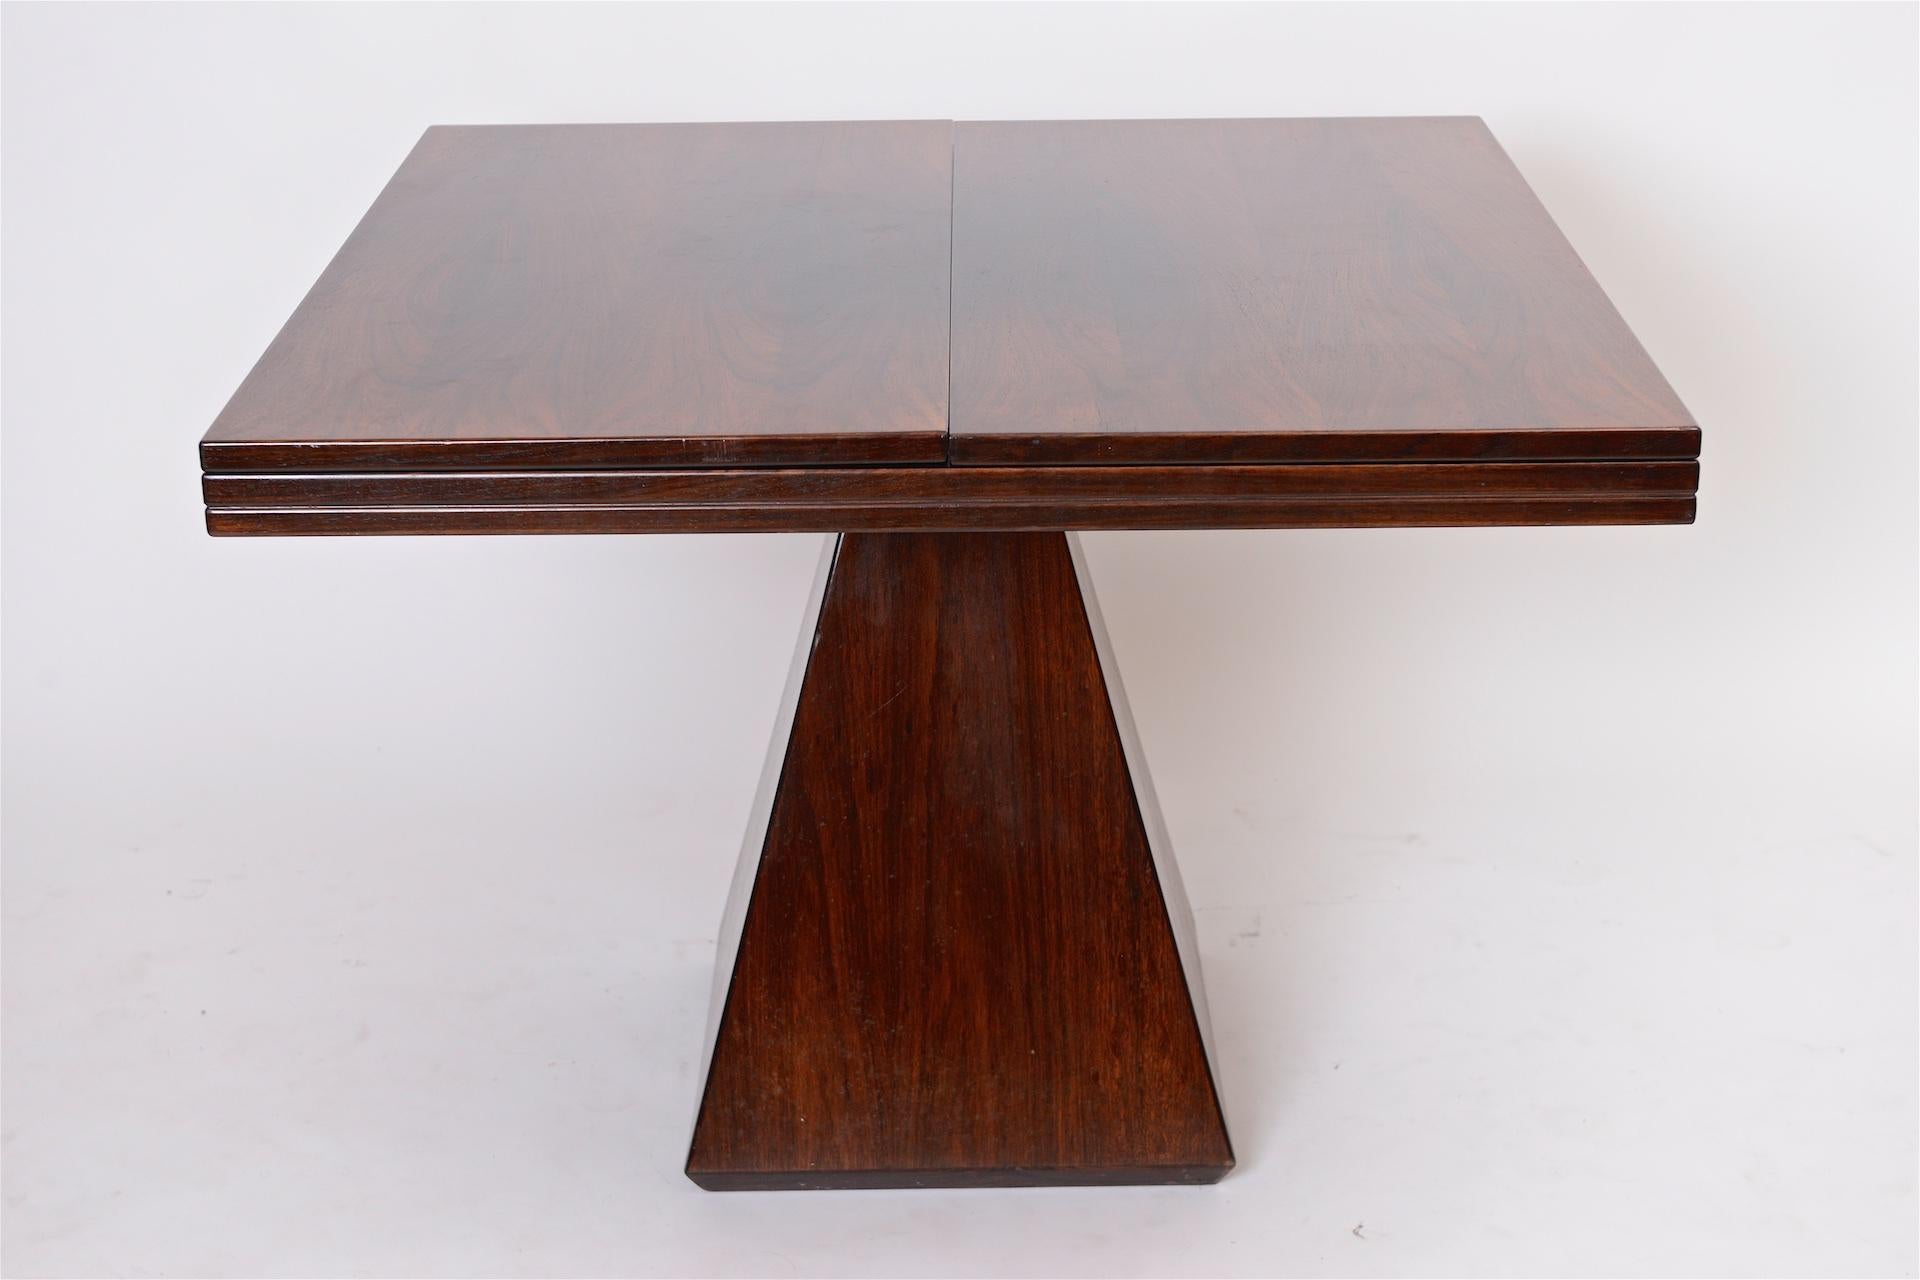 Rosewood extending table

Dimensions closed 100 cm x 100 cm x 75 cm (H)

Open 200 cm length.